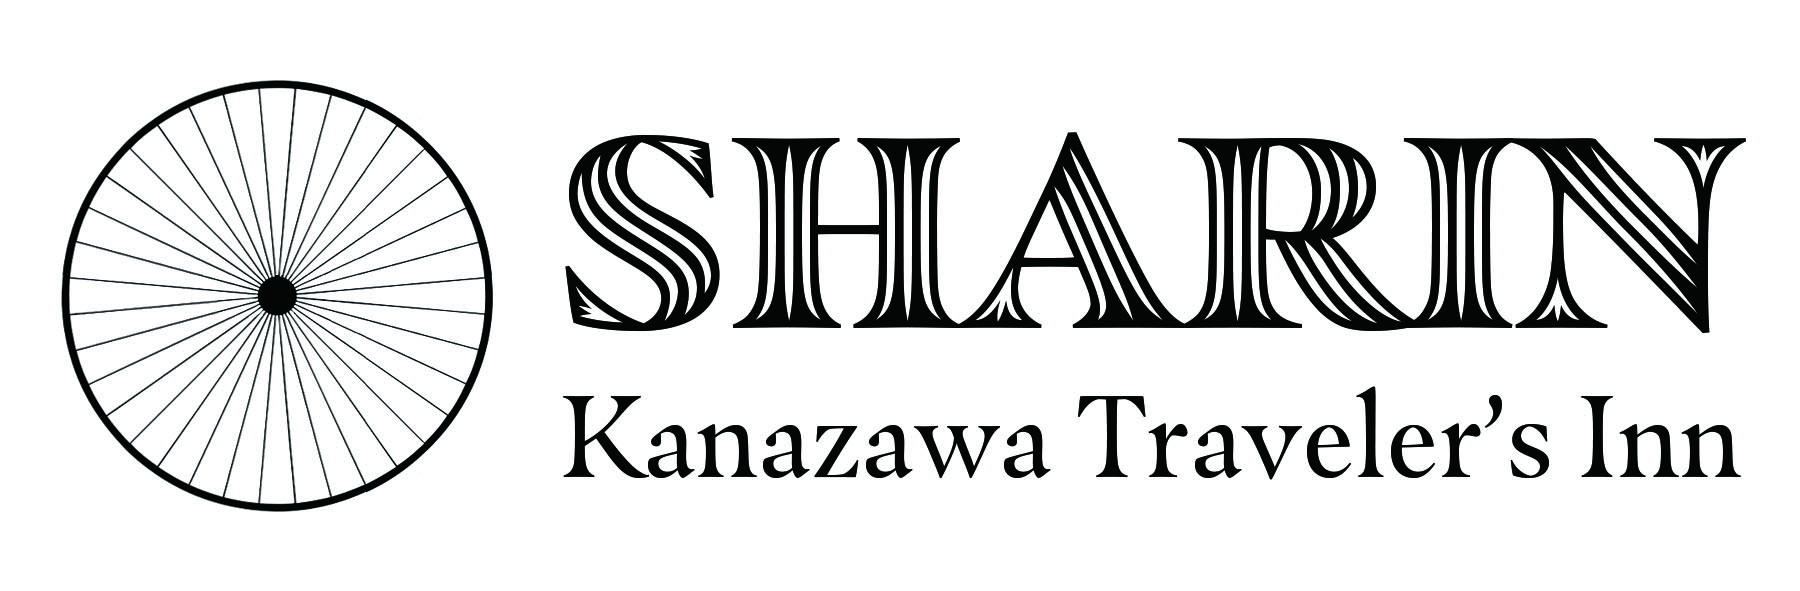 SHARIN Kanazawa Traveler's Inn ロゴ